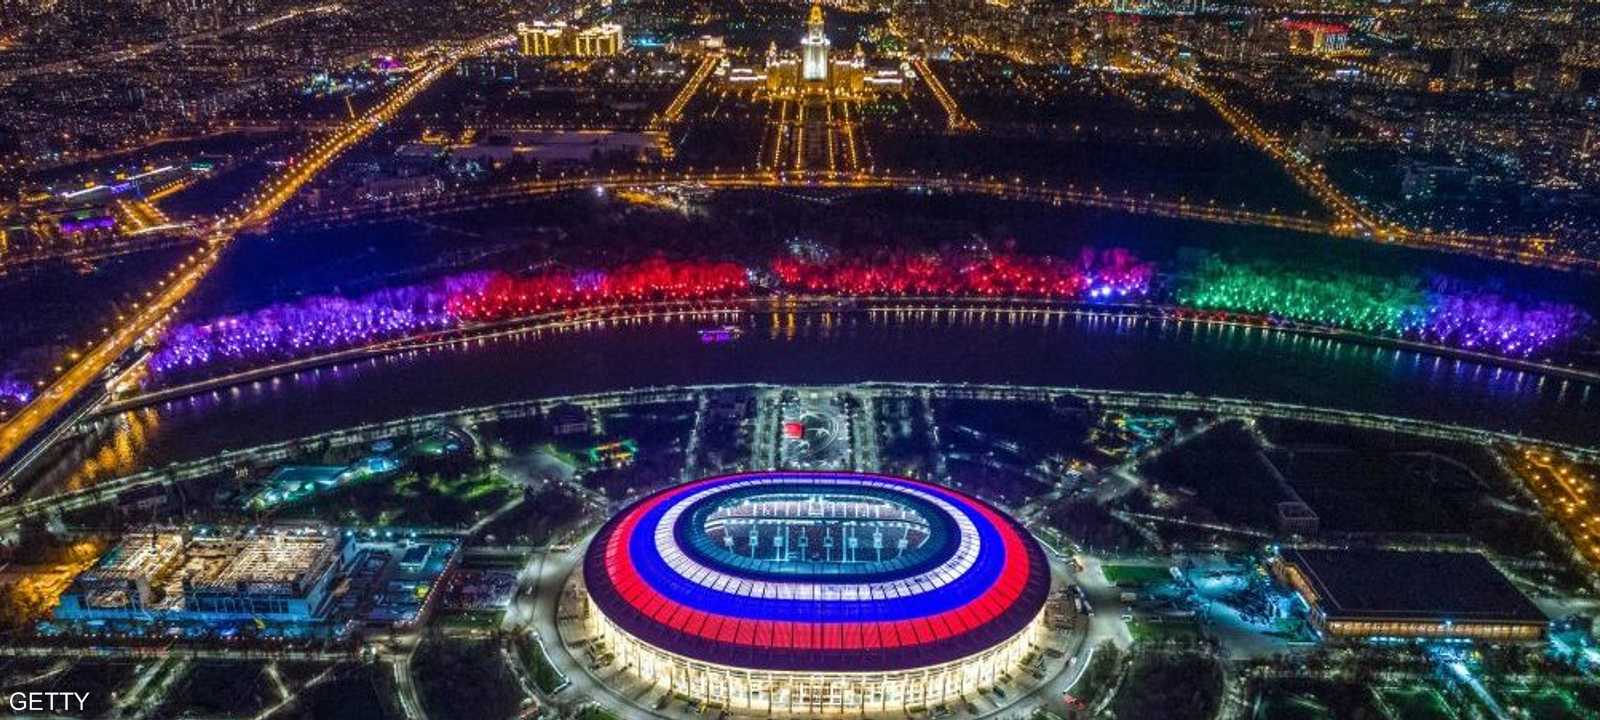 ملعب لوجينكي يستضيف المباراة الافتتاحية بين السعودية وروسيا